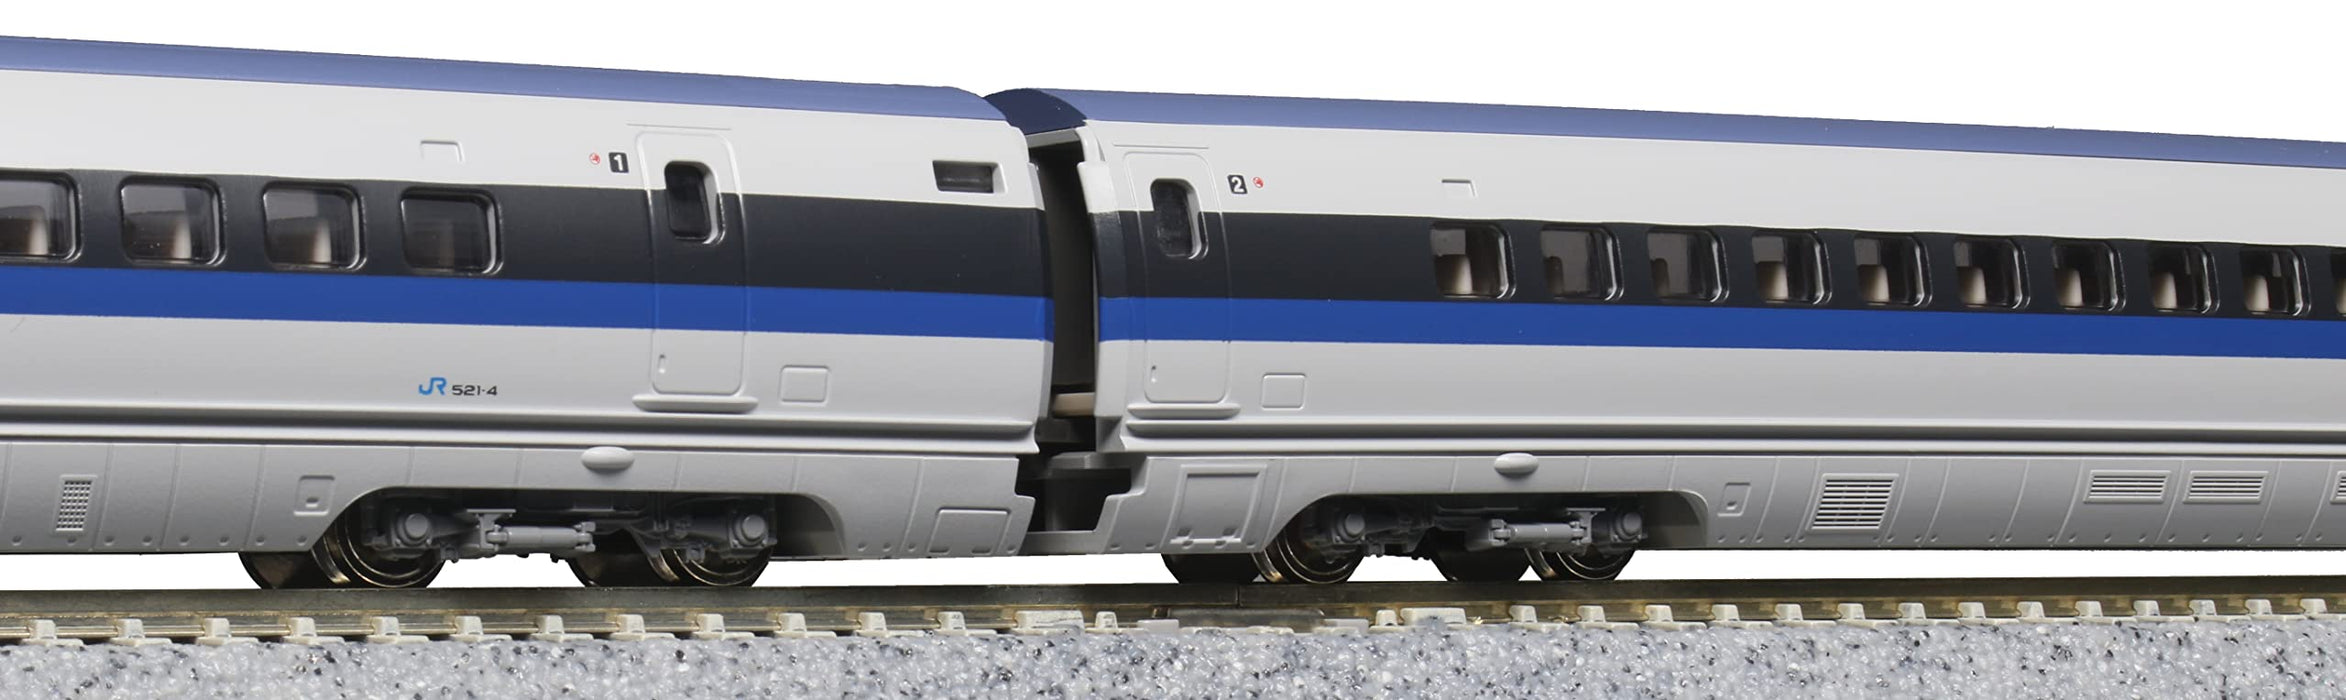 KATO 10-1794 N Gauge 500 Series Shinkansen Nozomi 8-Car Basic Set Railway Model_5